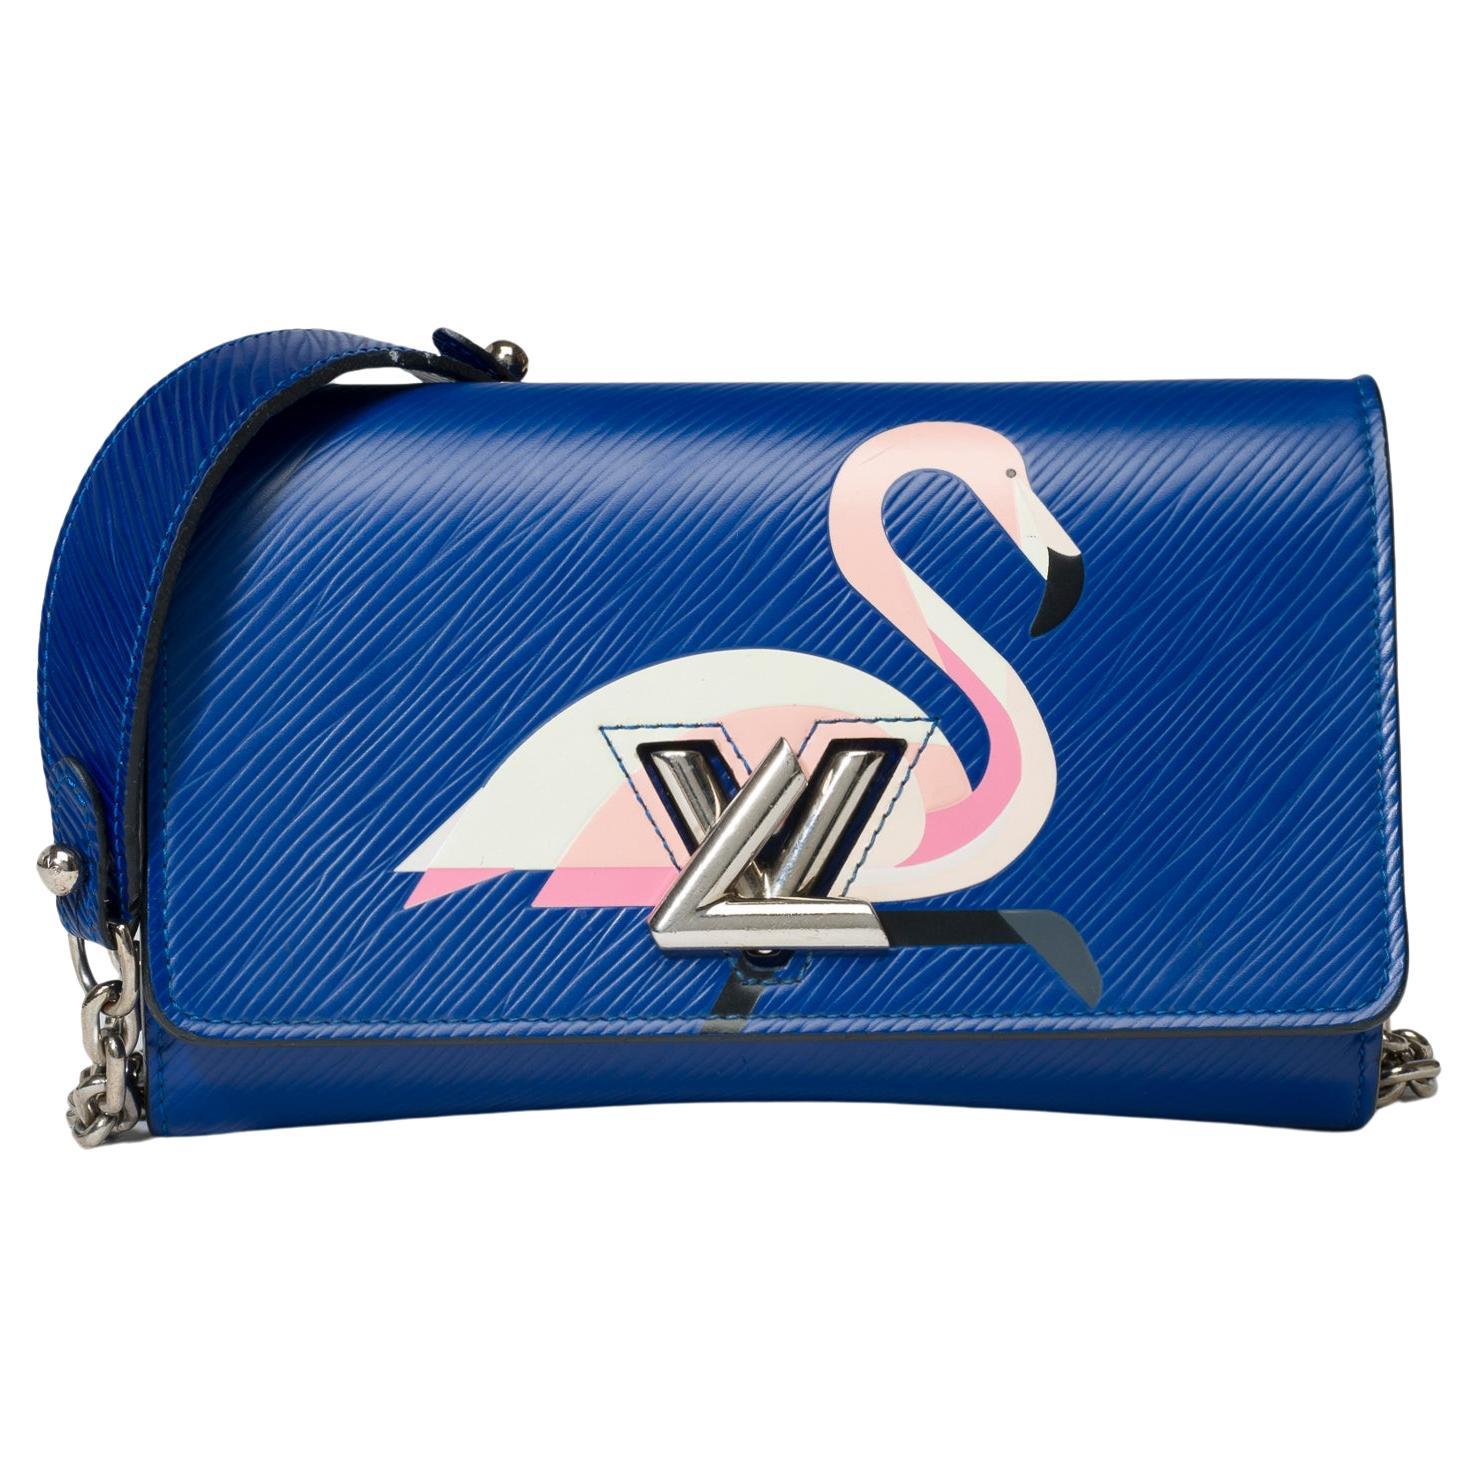 Flamingo Louis Vuitton Twist shoulder bag in blue epi leather, SHW